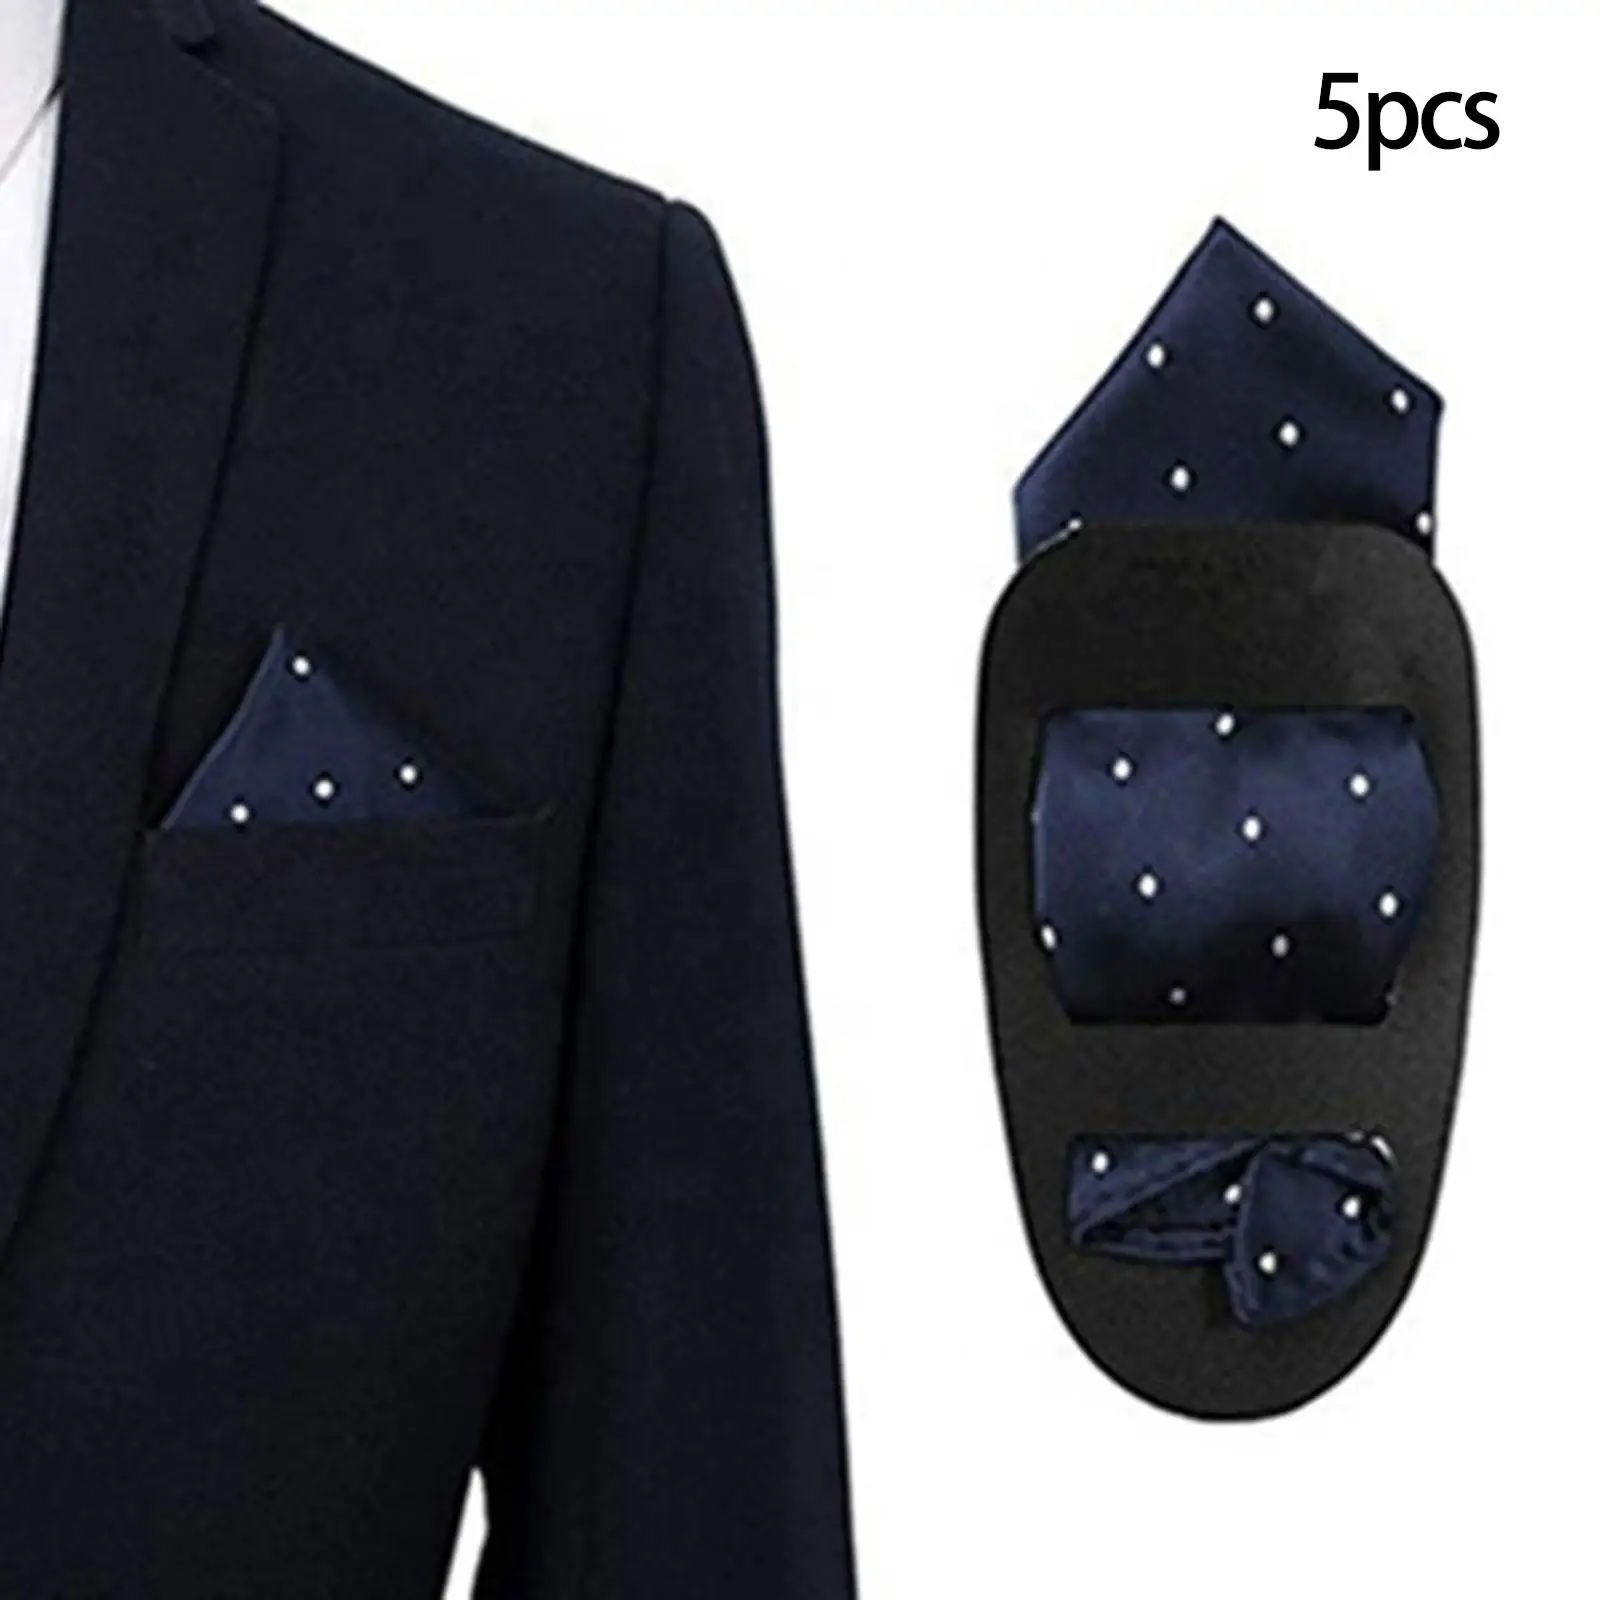 5 Pieces Pocket Square Holder, Square Scarf Holder, Pocket Towel Holder Support for MenS suits, Vests, Dinner Jackets